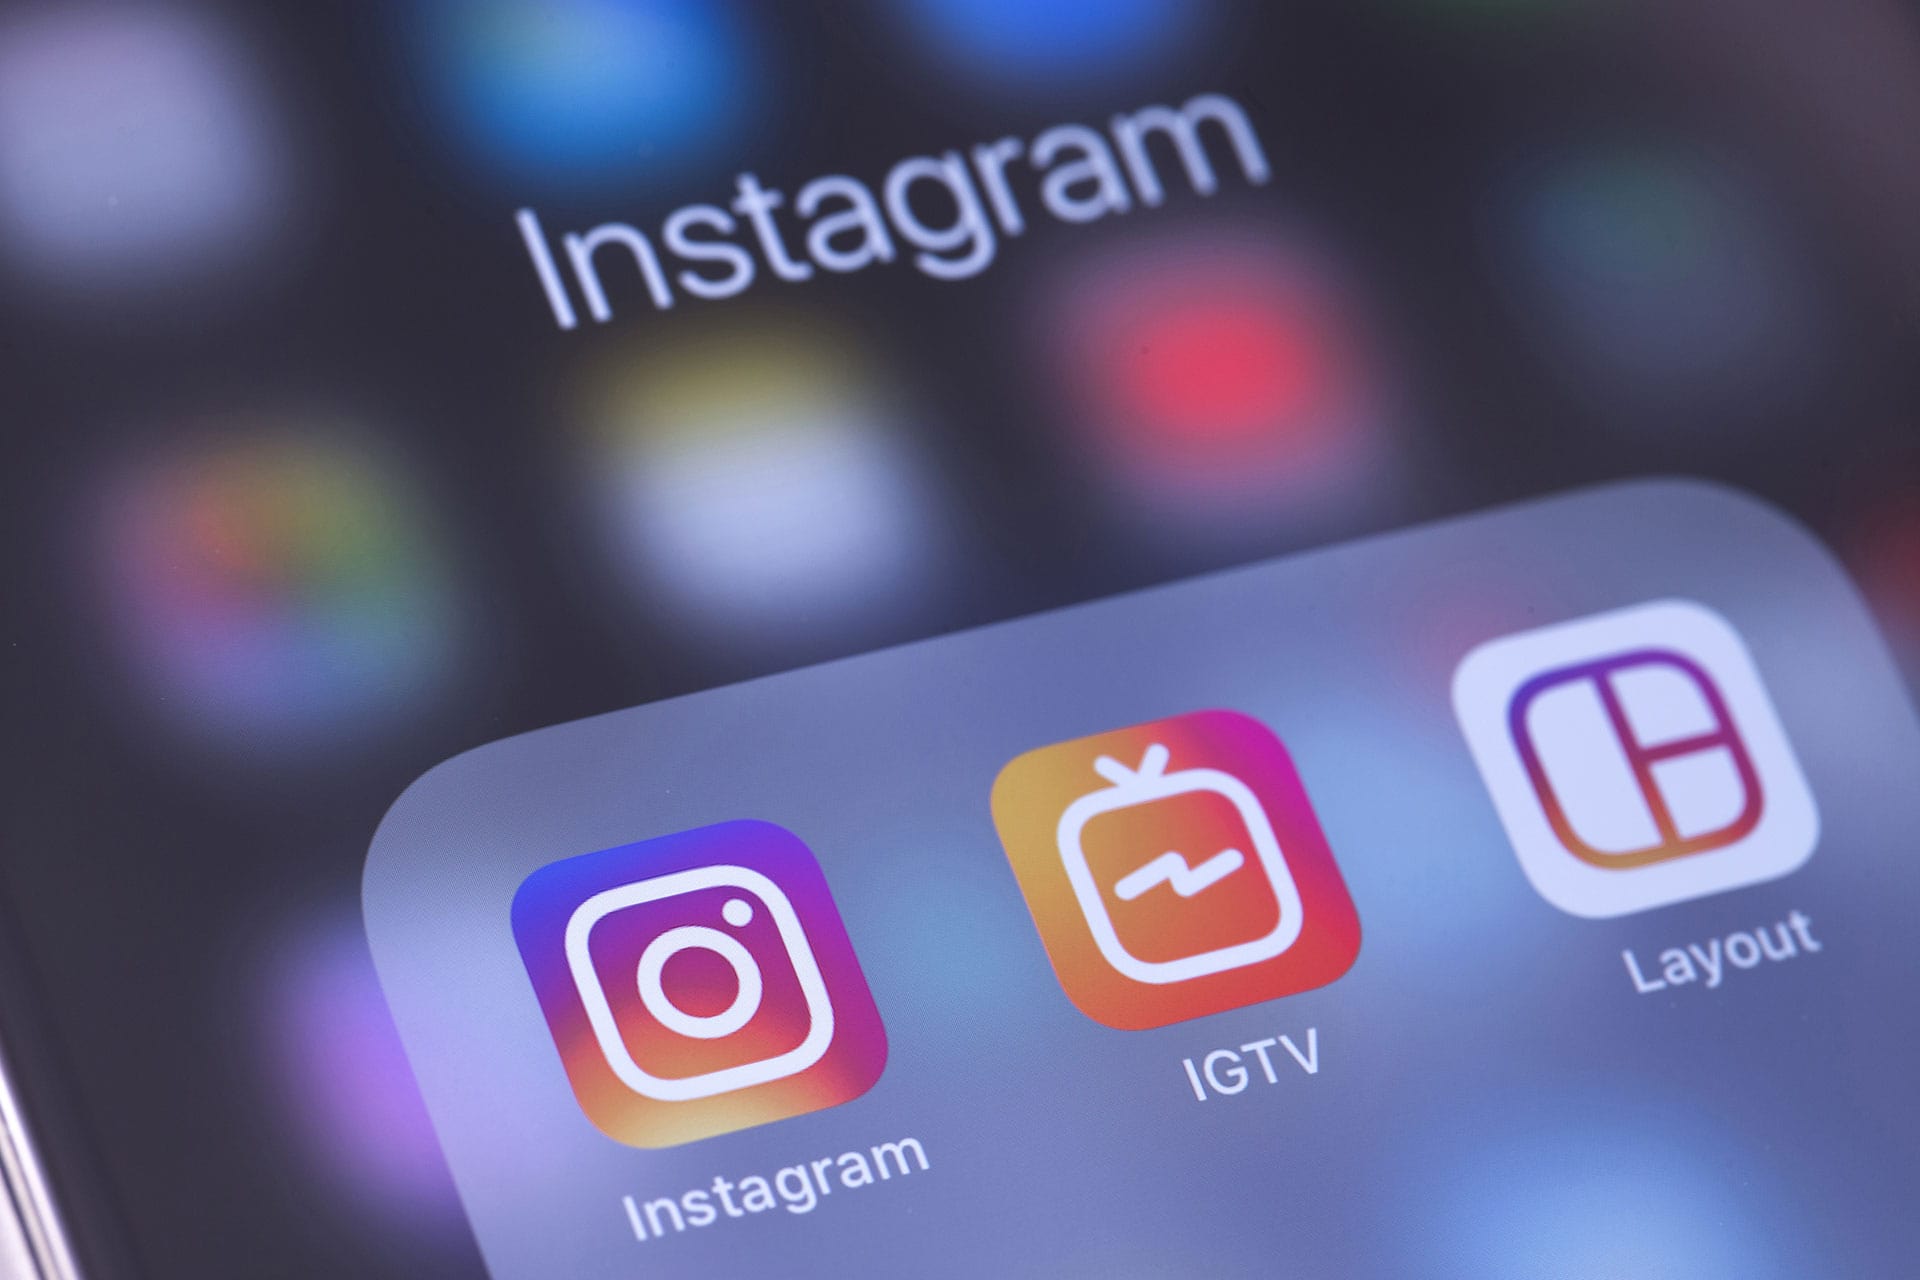 IGTV (Instagram Video) - co to jest i do czego może służyć?